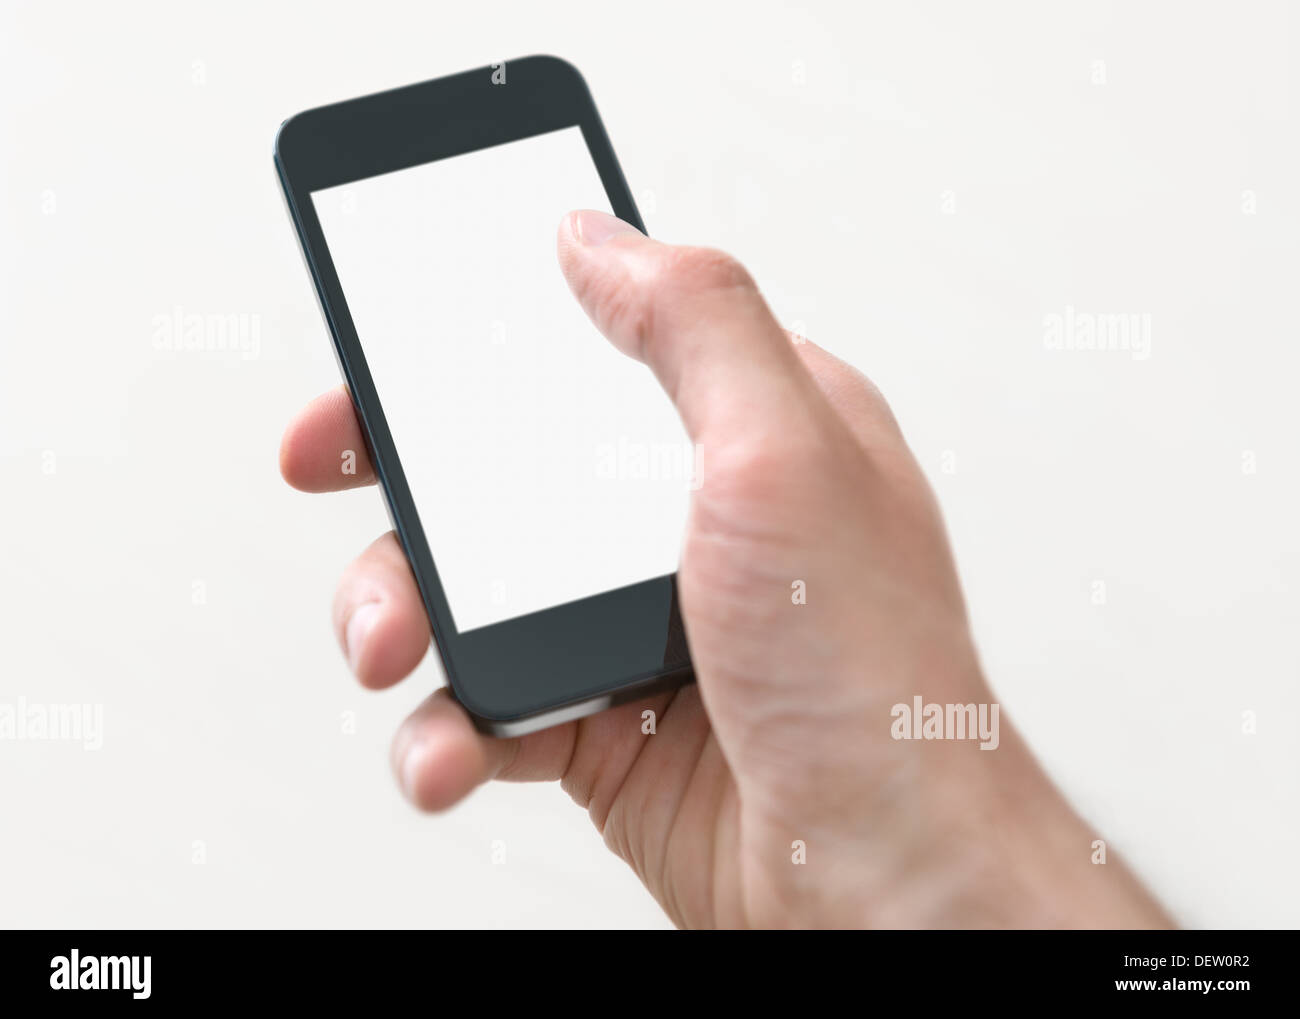 Hombre mano sosteniendo y tocando en mobile smartphone con pantalla en blanco. Aislado sobre fondo blanco. Foto de stock